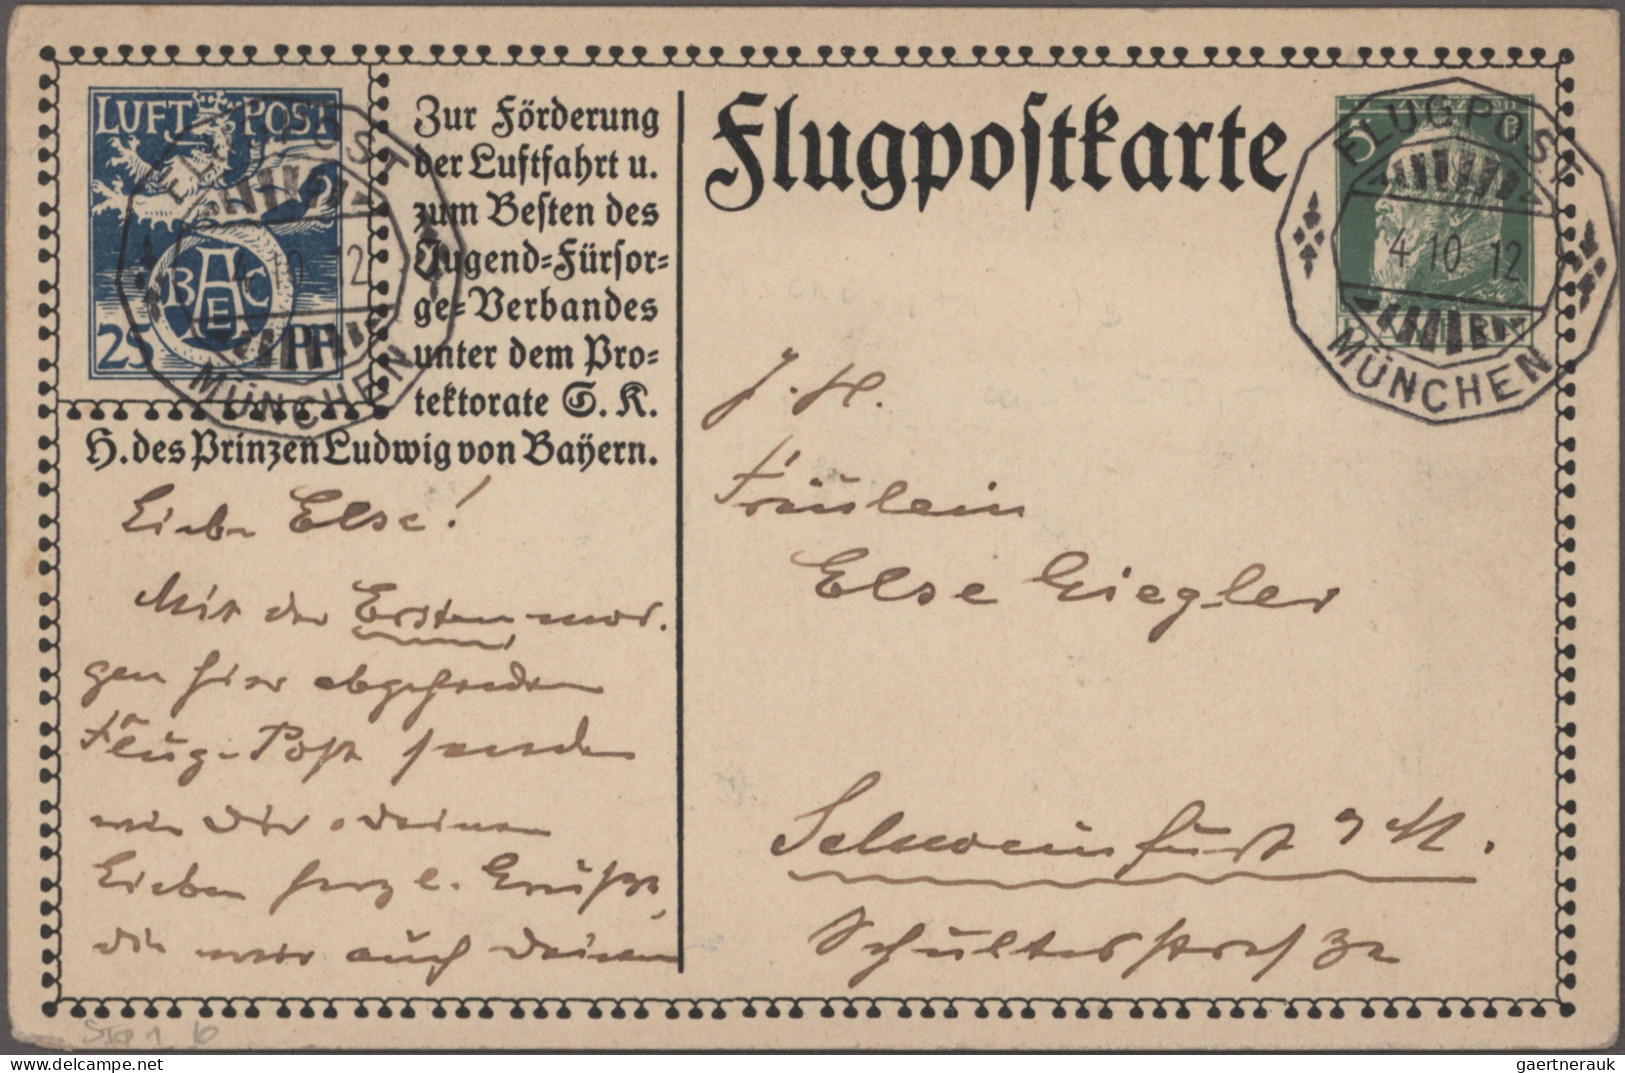 Bayern - Marken und Briefe: 1869/1920, Bayern-Ganzsachen: Sammlung der amtlichen